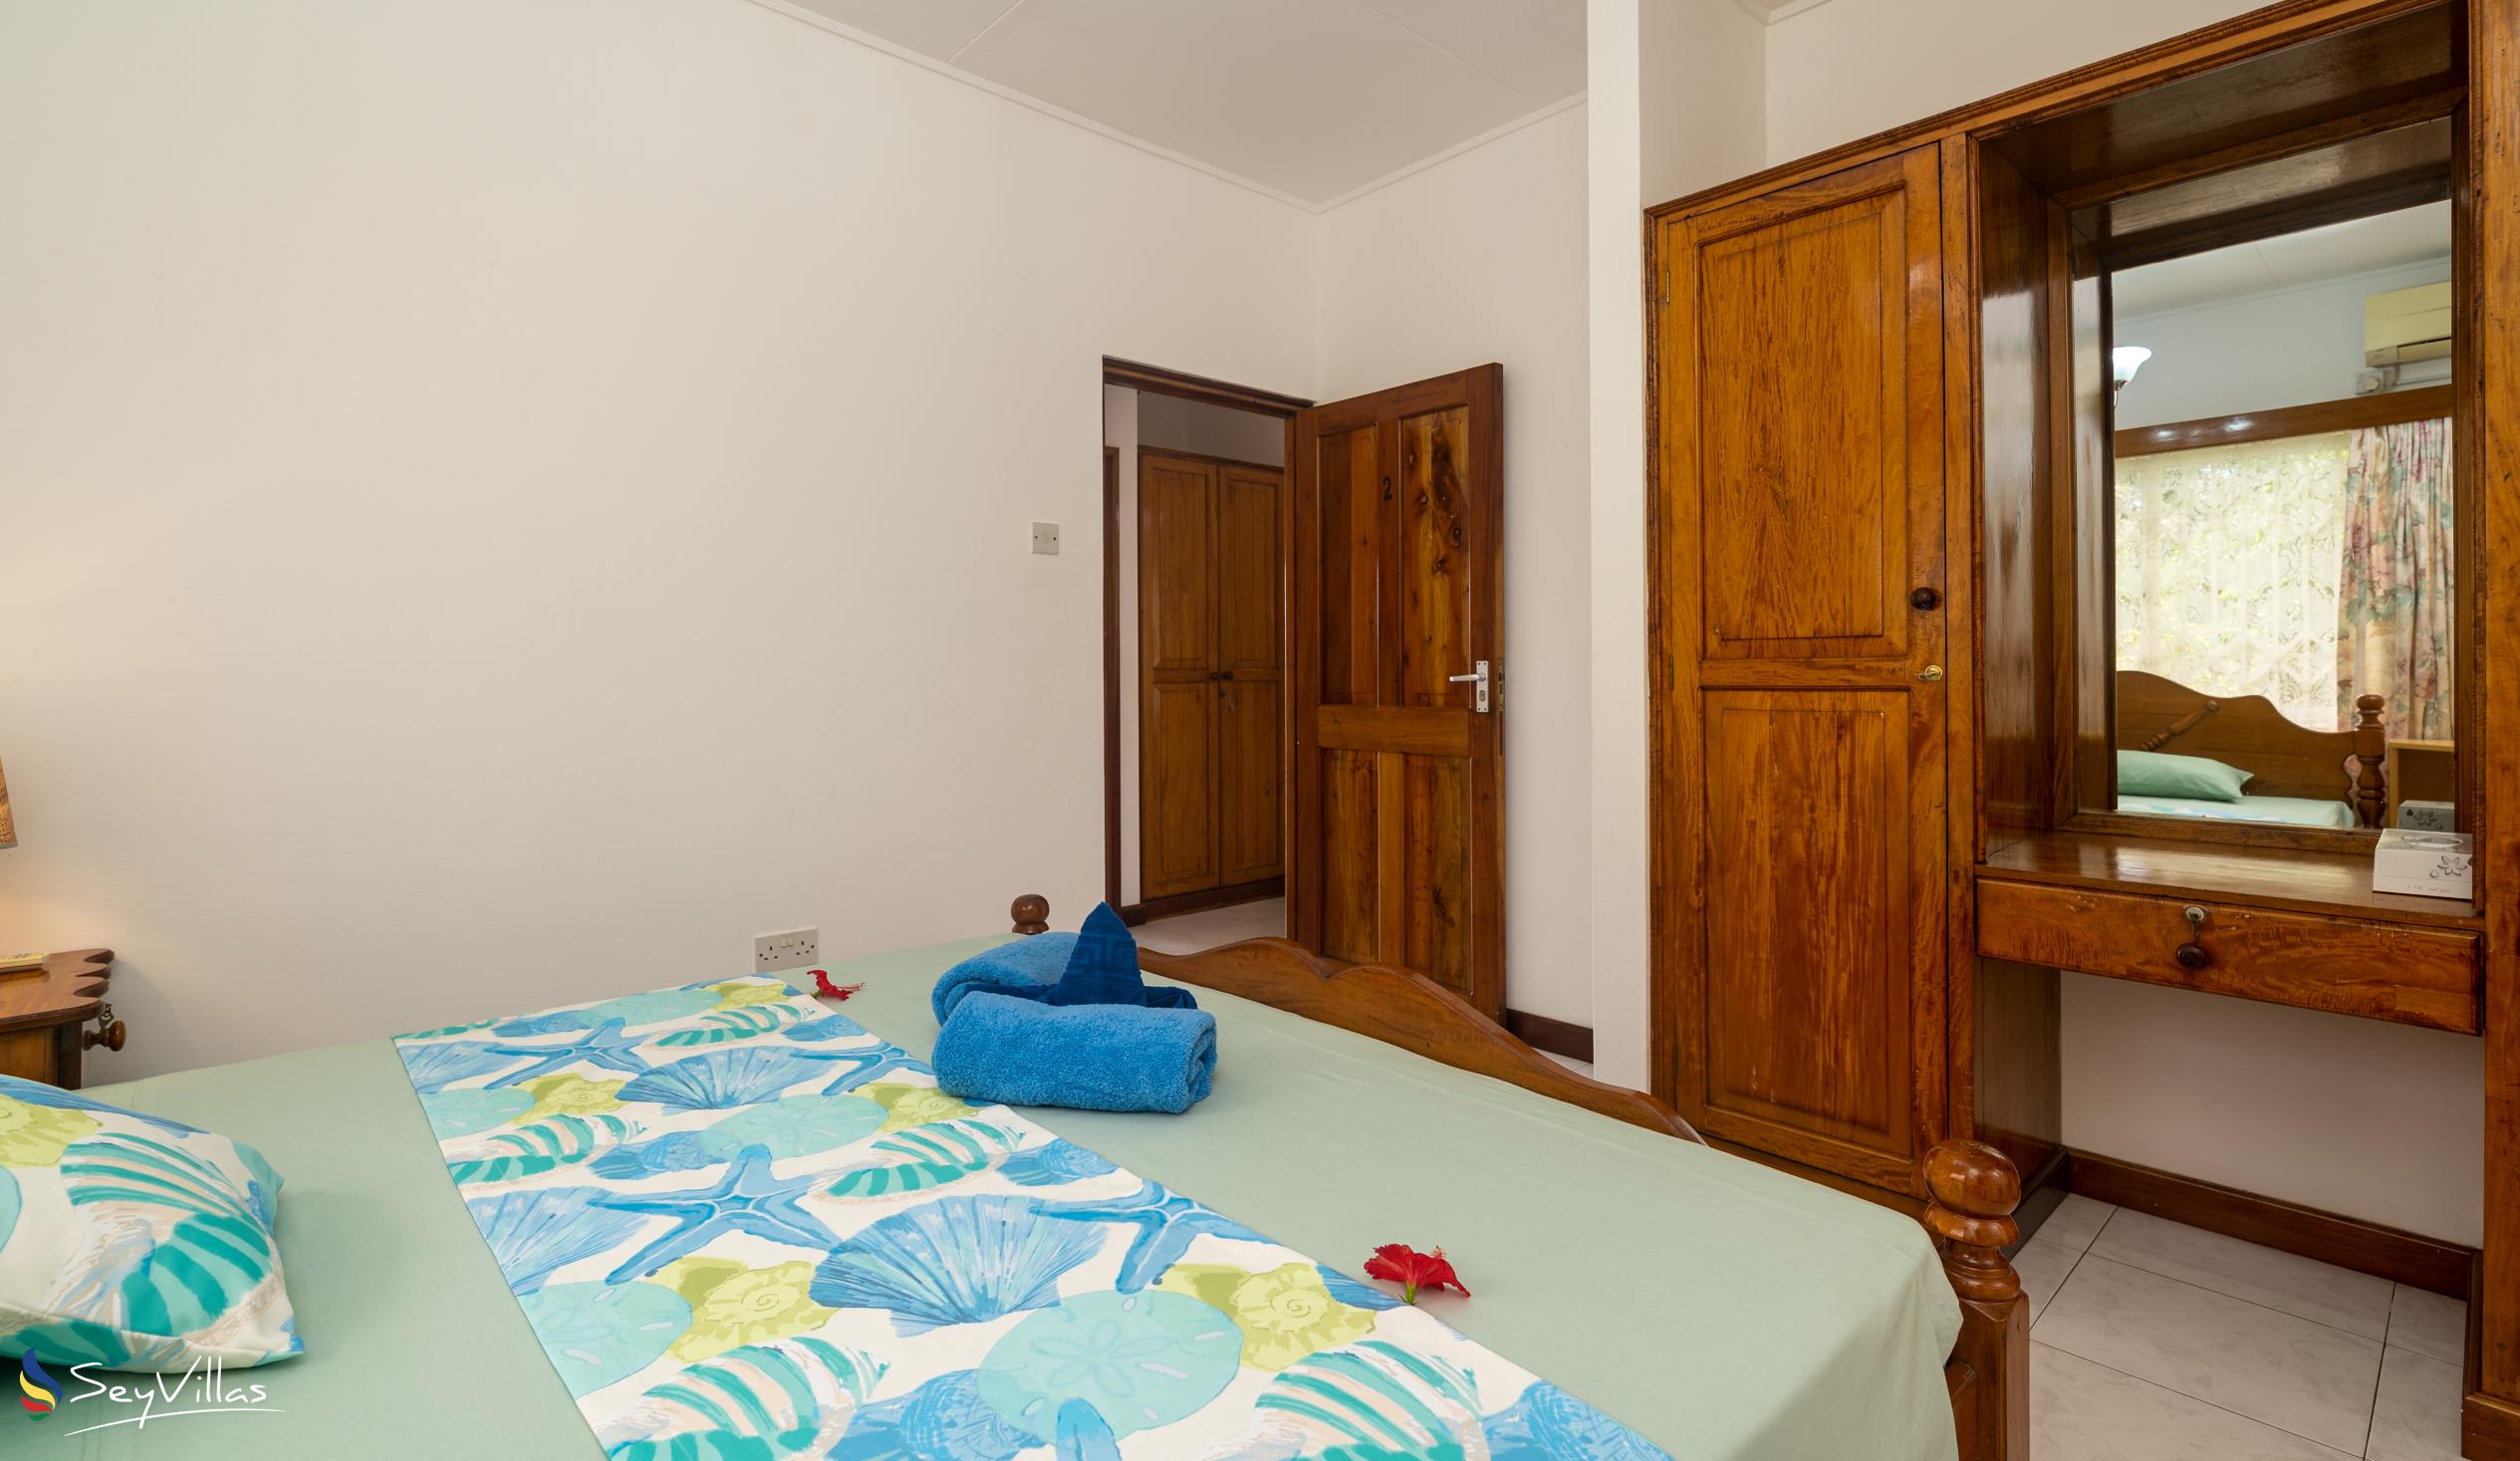 Foto 52: Villa Verde - Villa 3 chambres - Mahé (Seychelles)